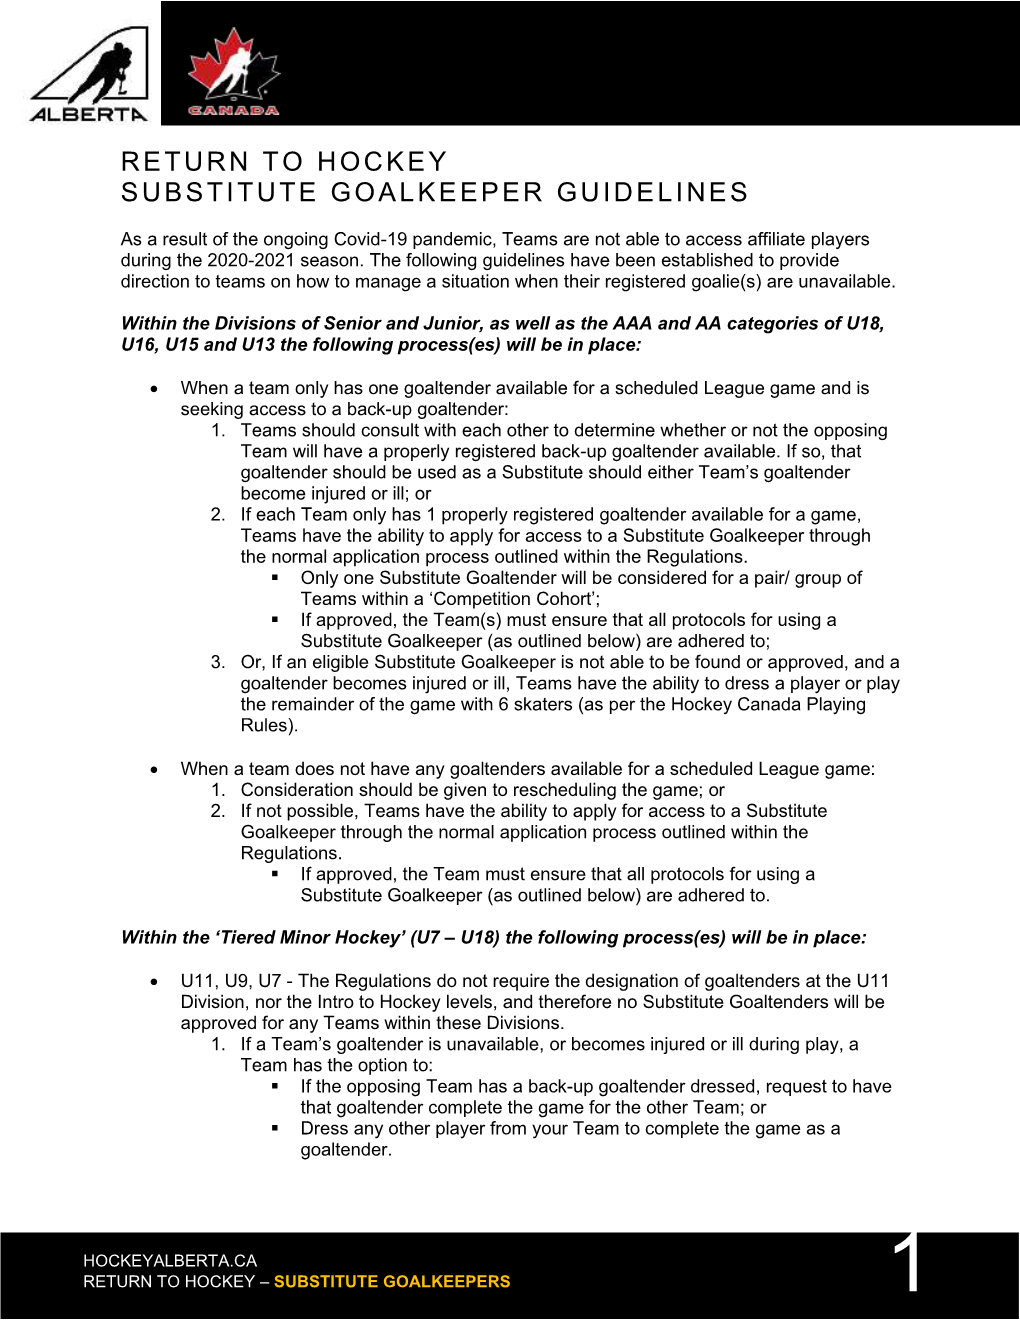 Return to Hockey Substitute Goalkeeper Guidelines